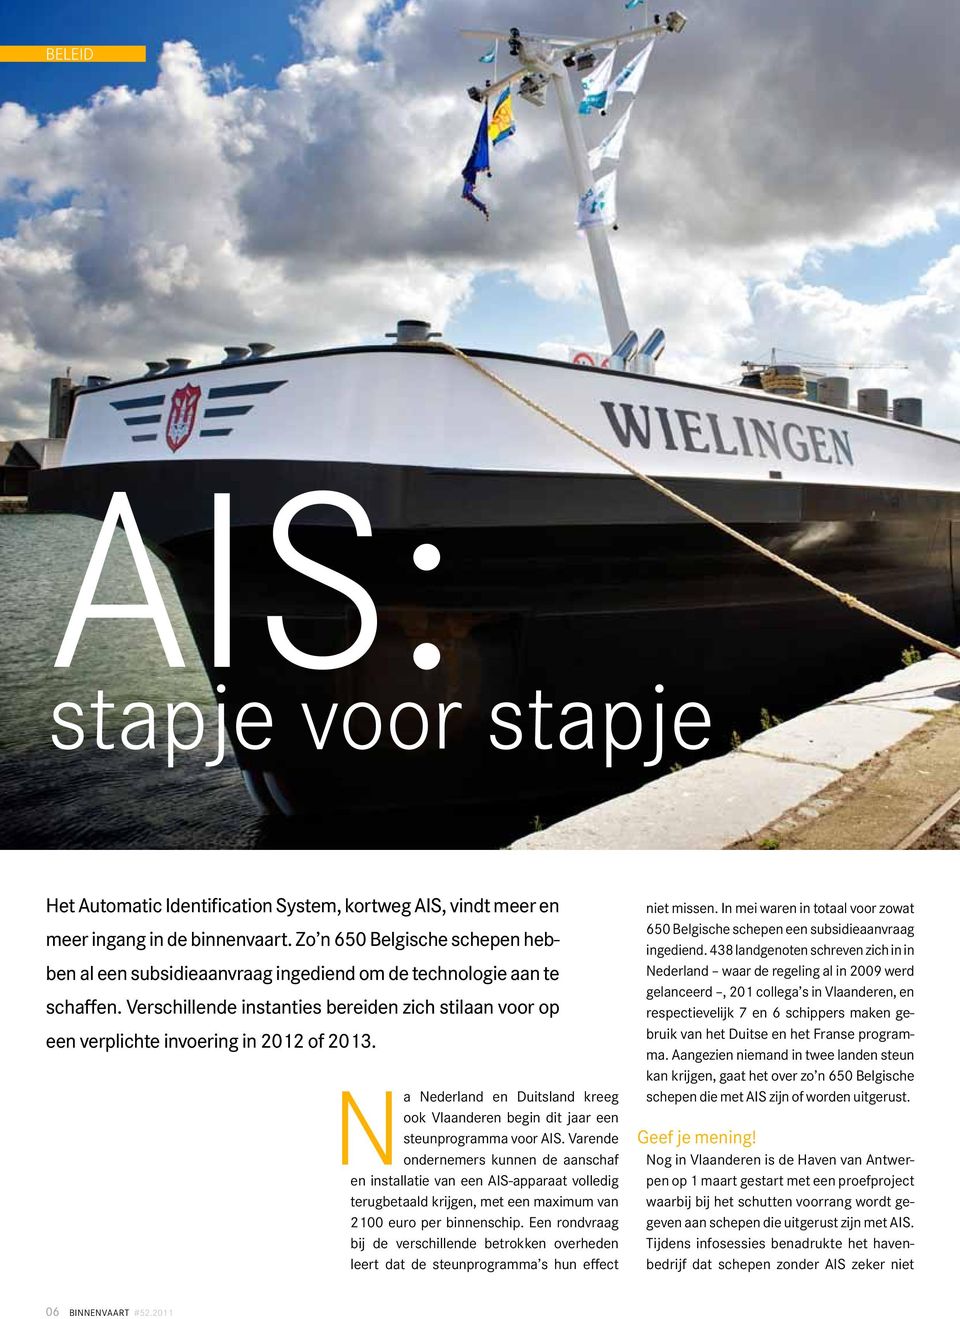 Na Nederland en Duitsland kreeg ook Vlaanderen begin dit jaar een steunprogramma voor AIS.